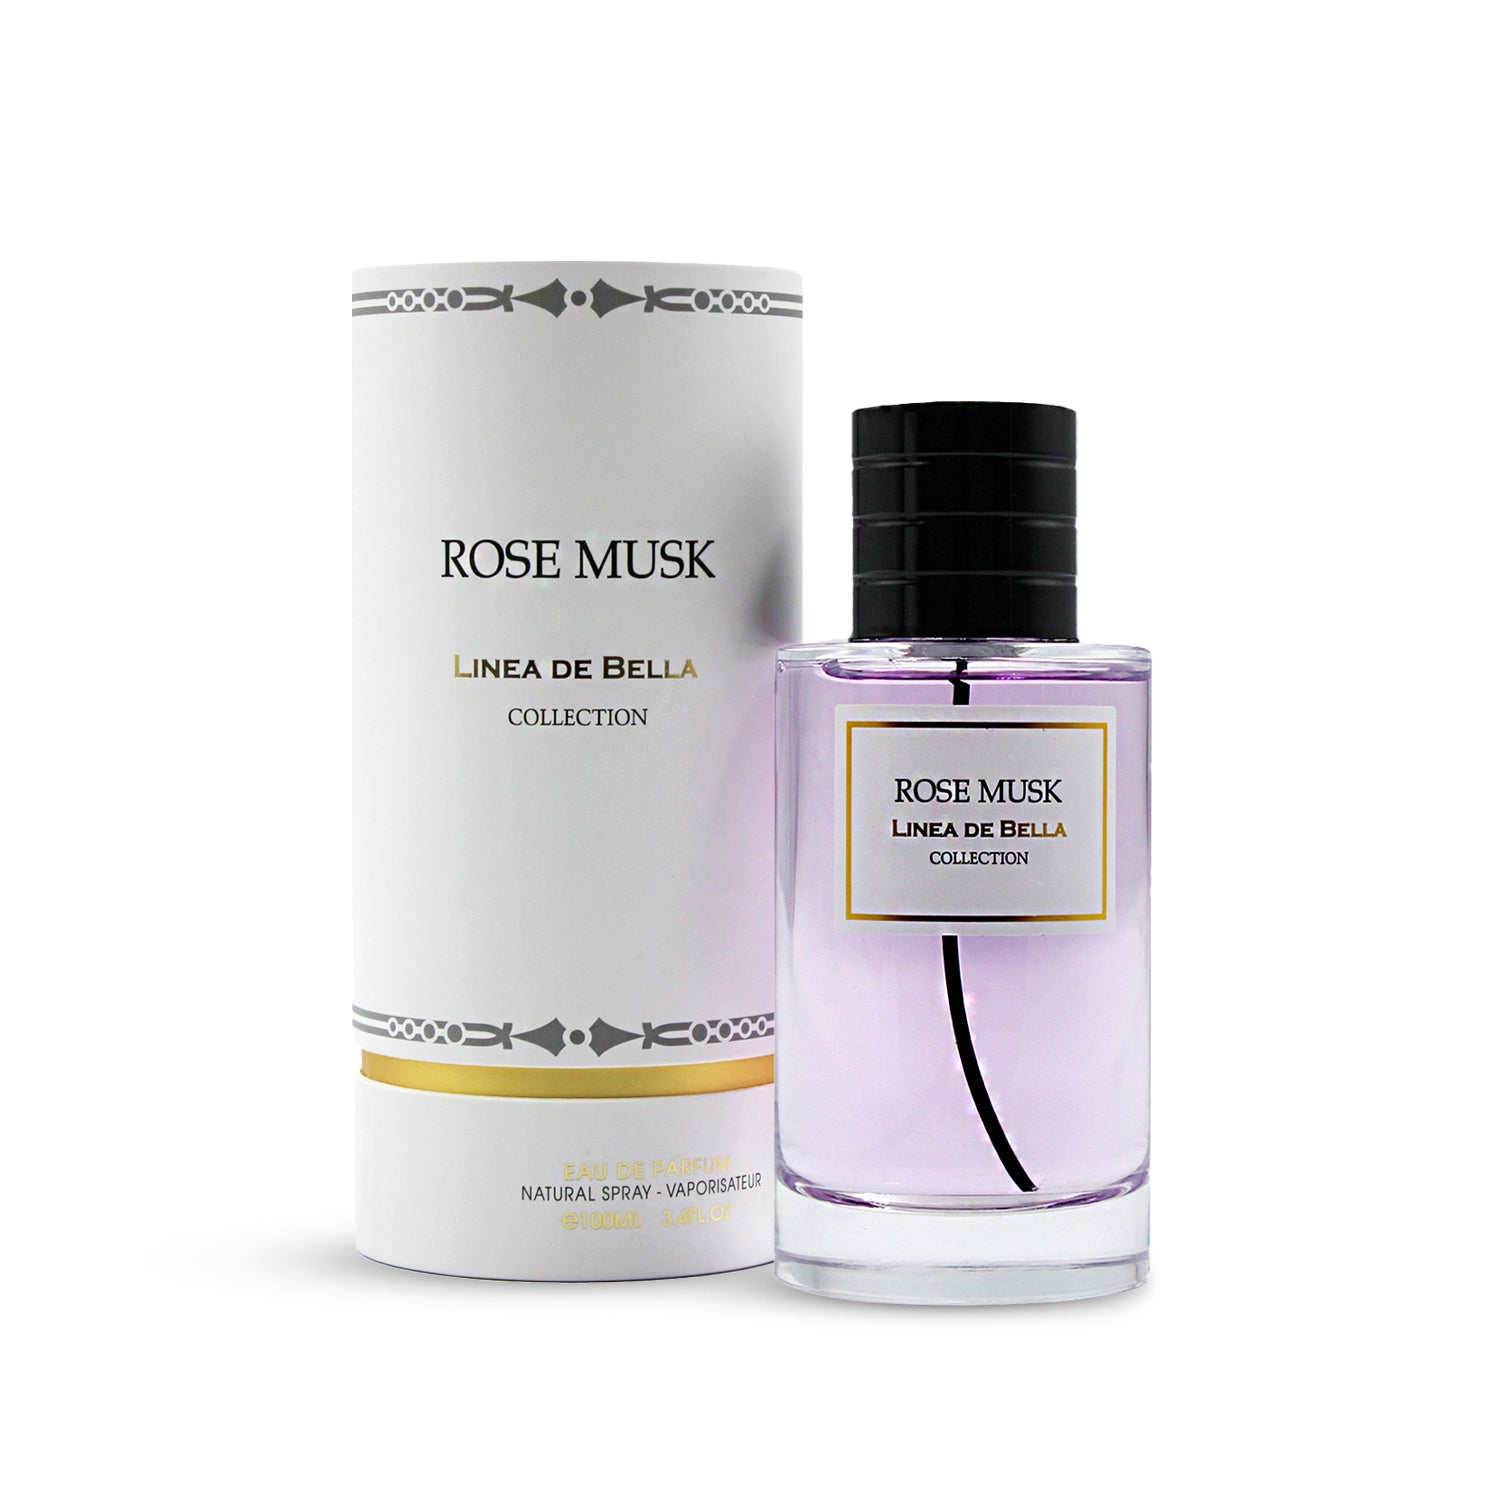 ROSE MUSK perfume